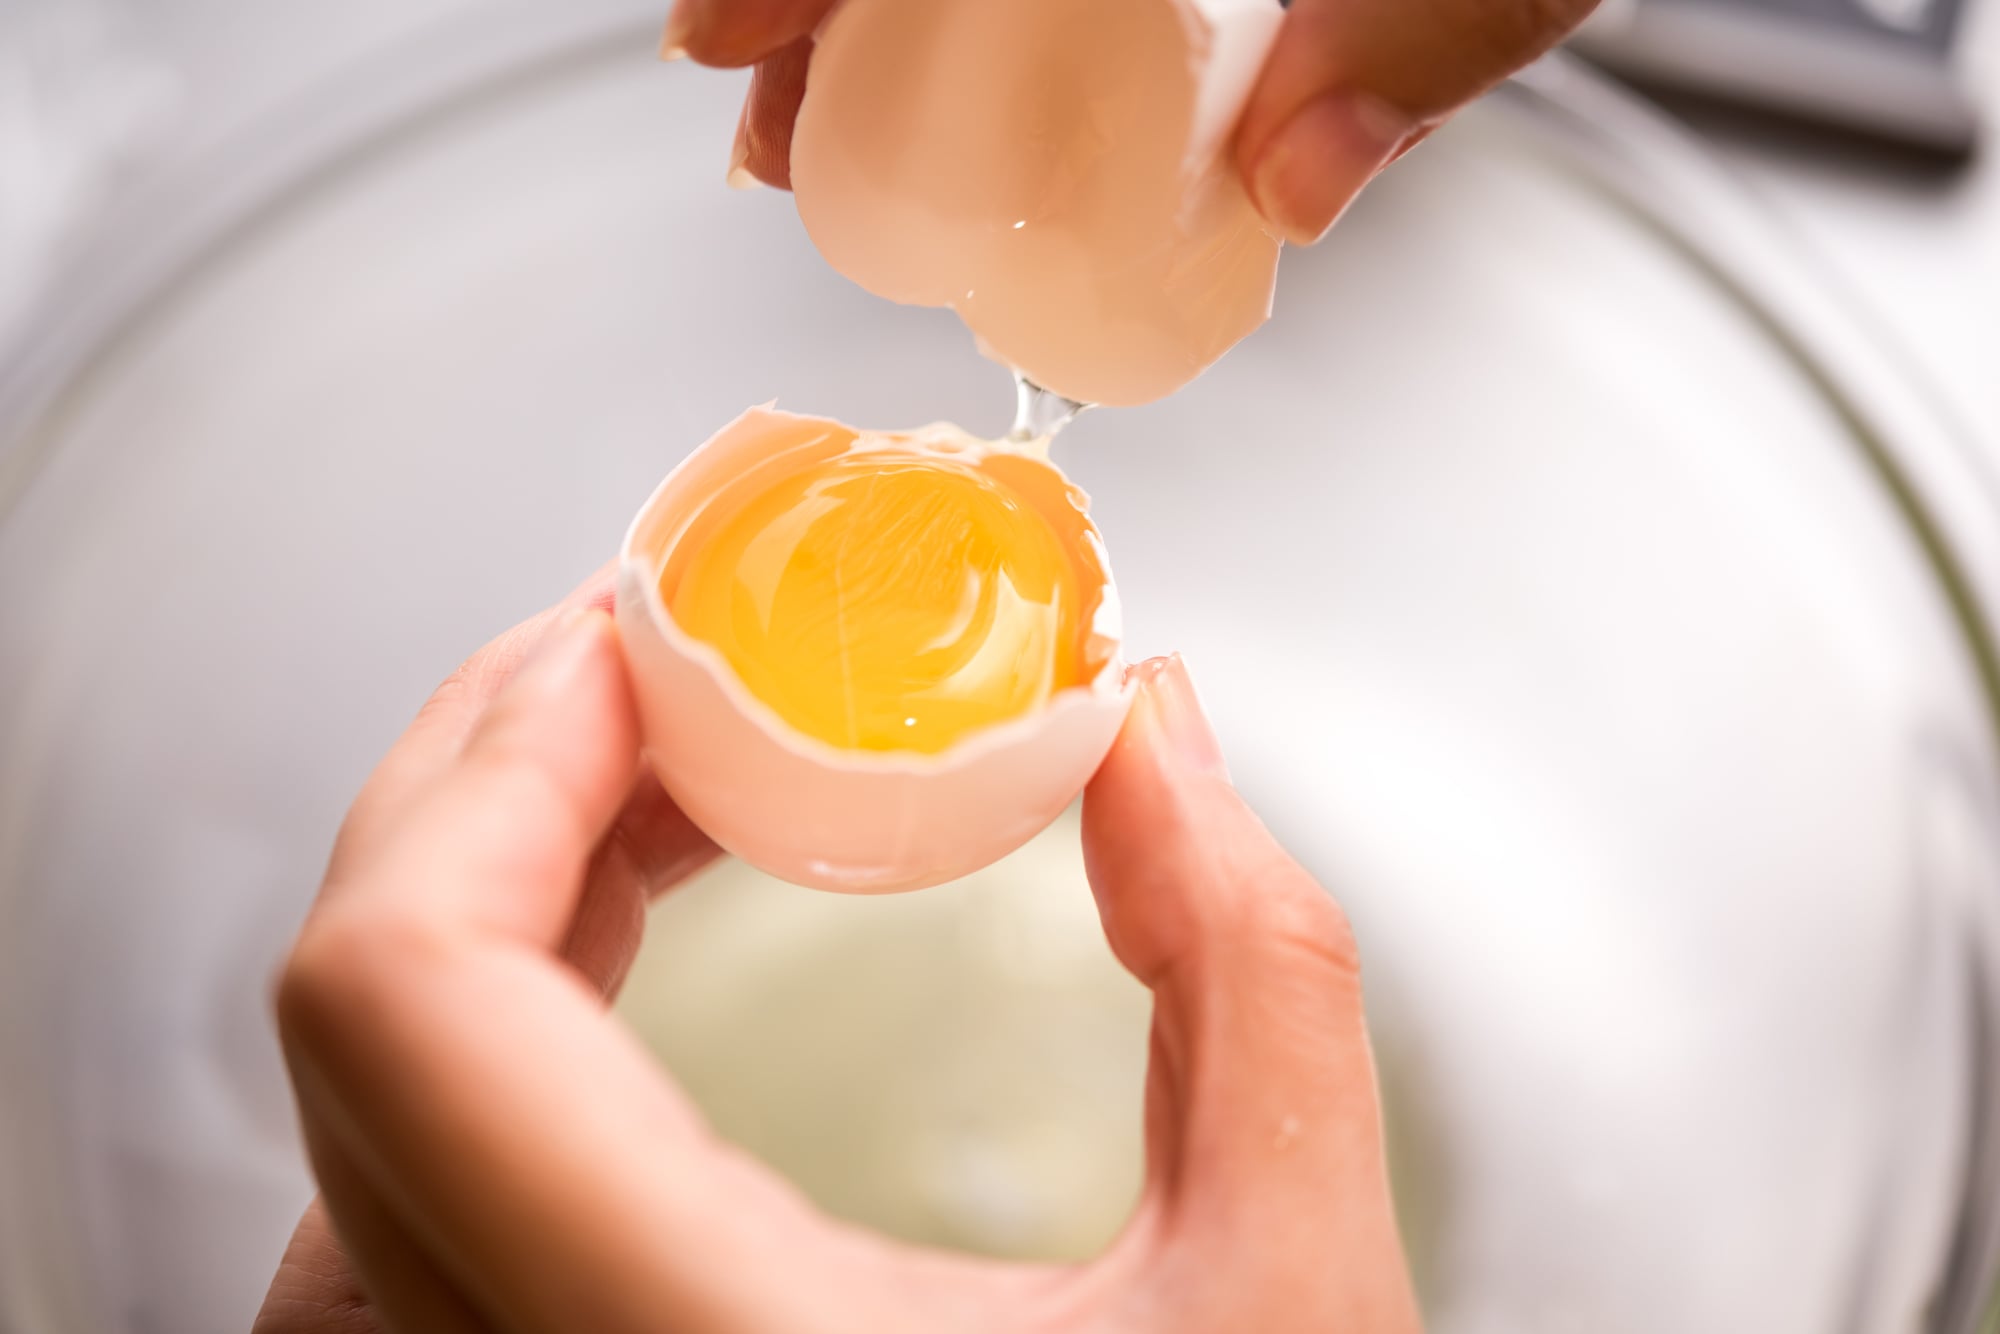 レシピに書かれた 卵黄 ママたちは余った卵白をどう使っているのか ママスタセレクト